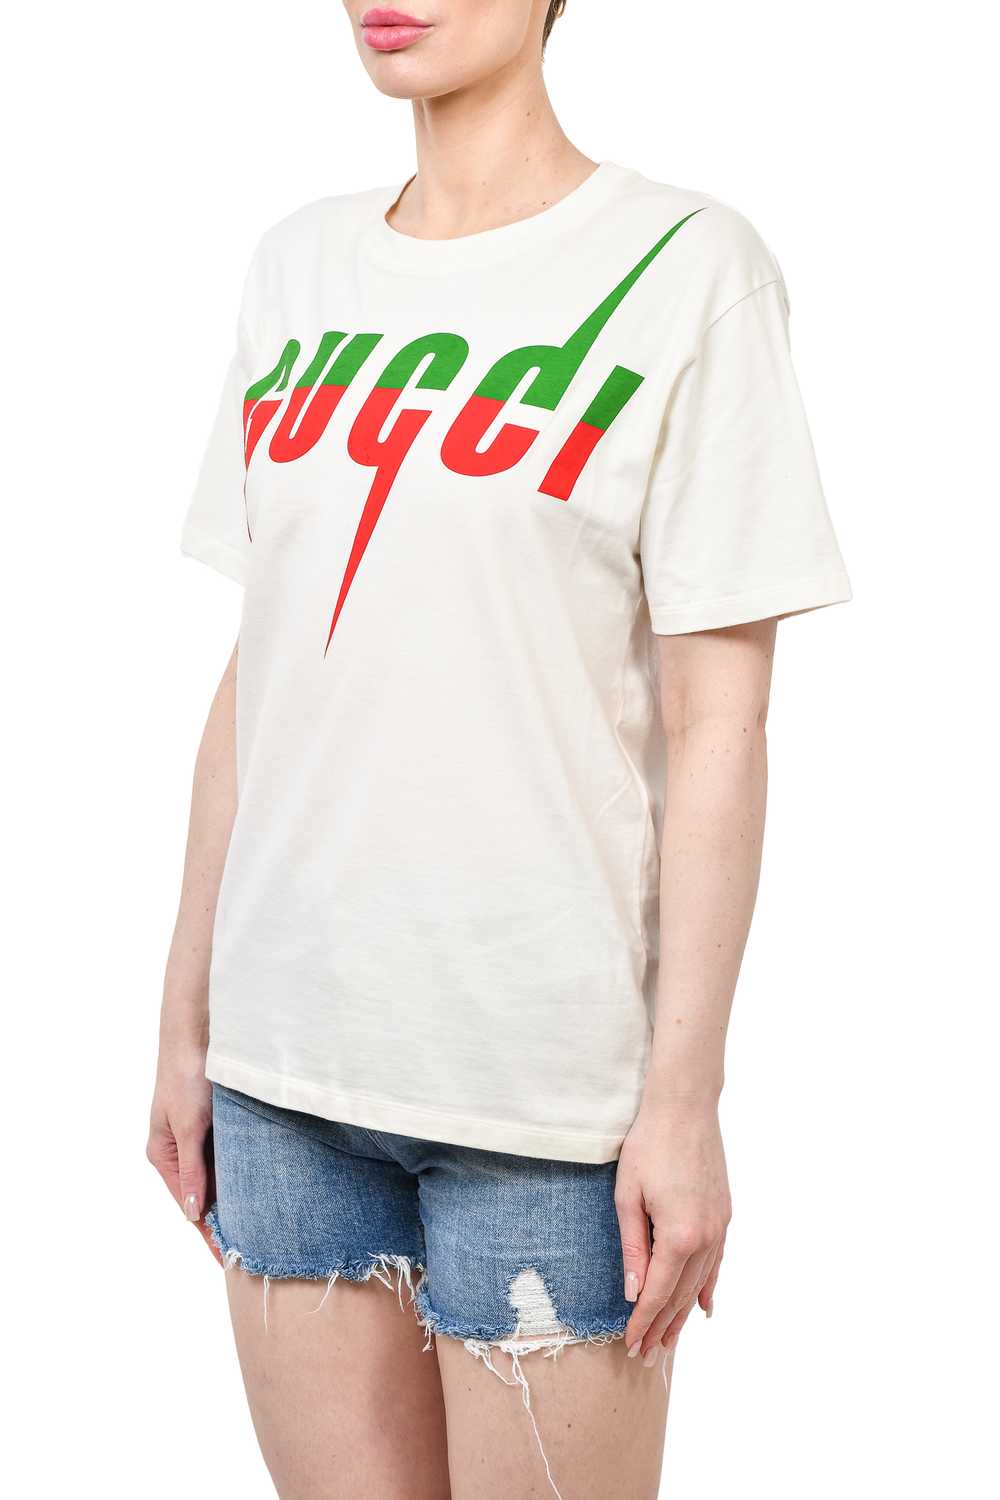 Gucci White Cotton 'Blade' Print T-Shirt Size XS - image 2